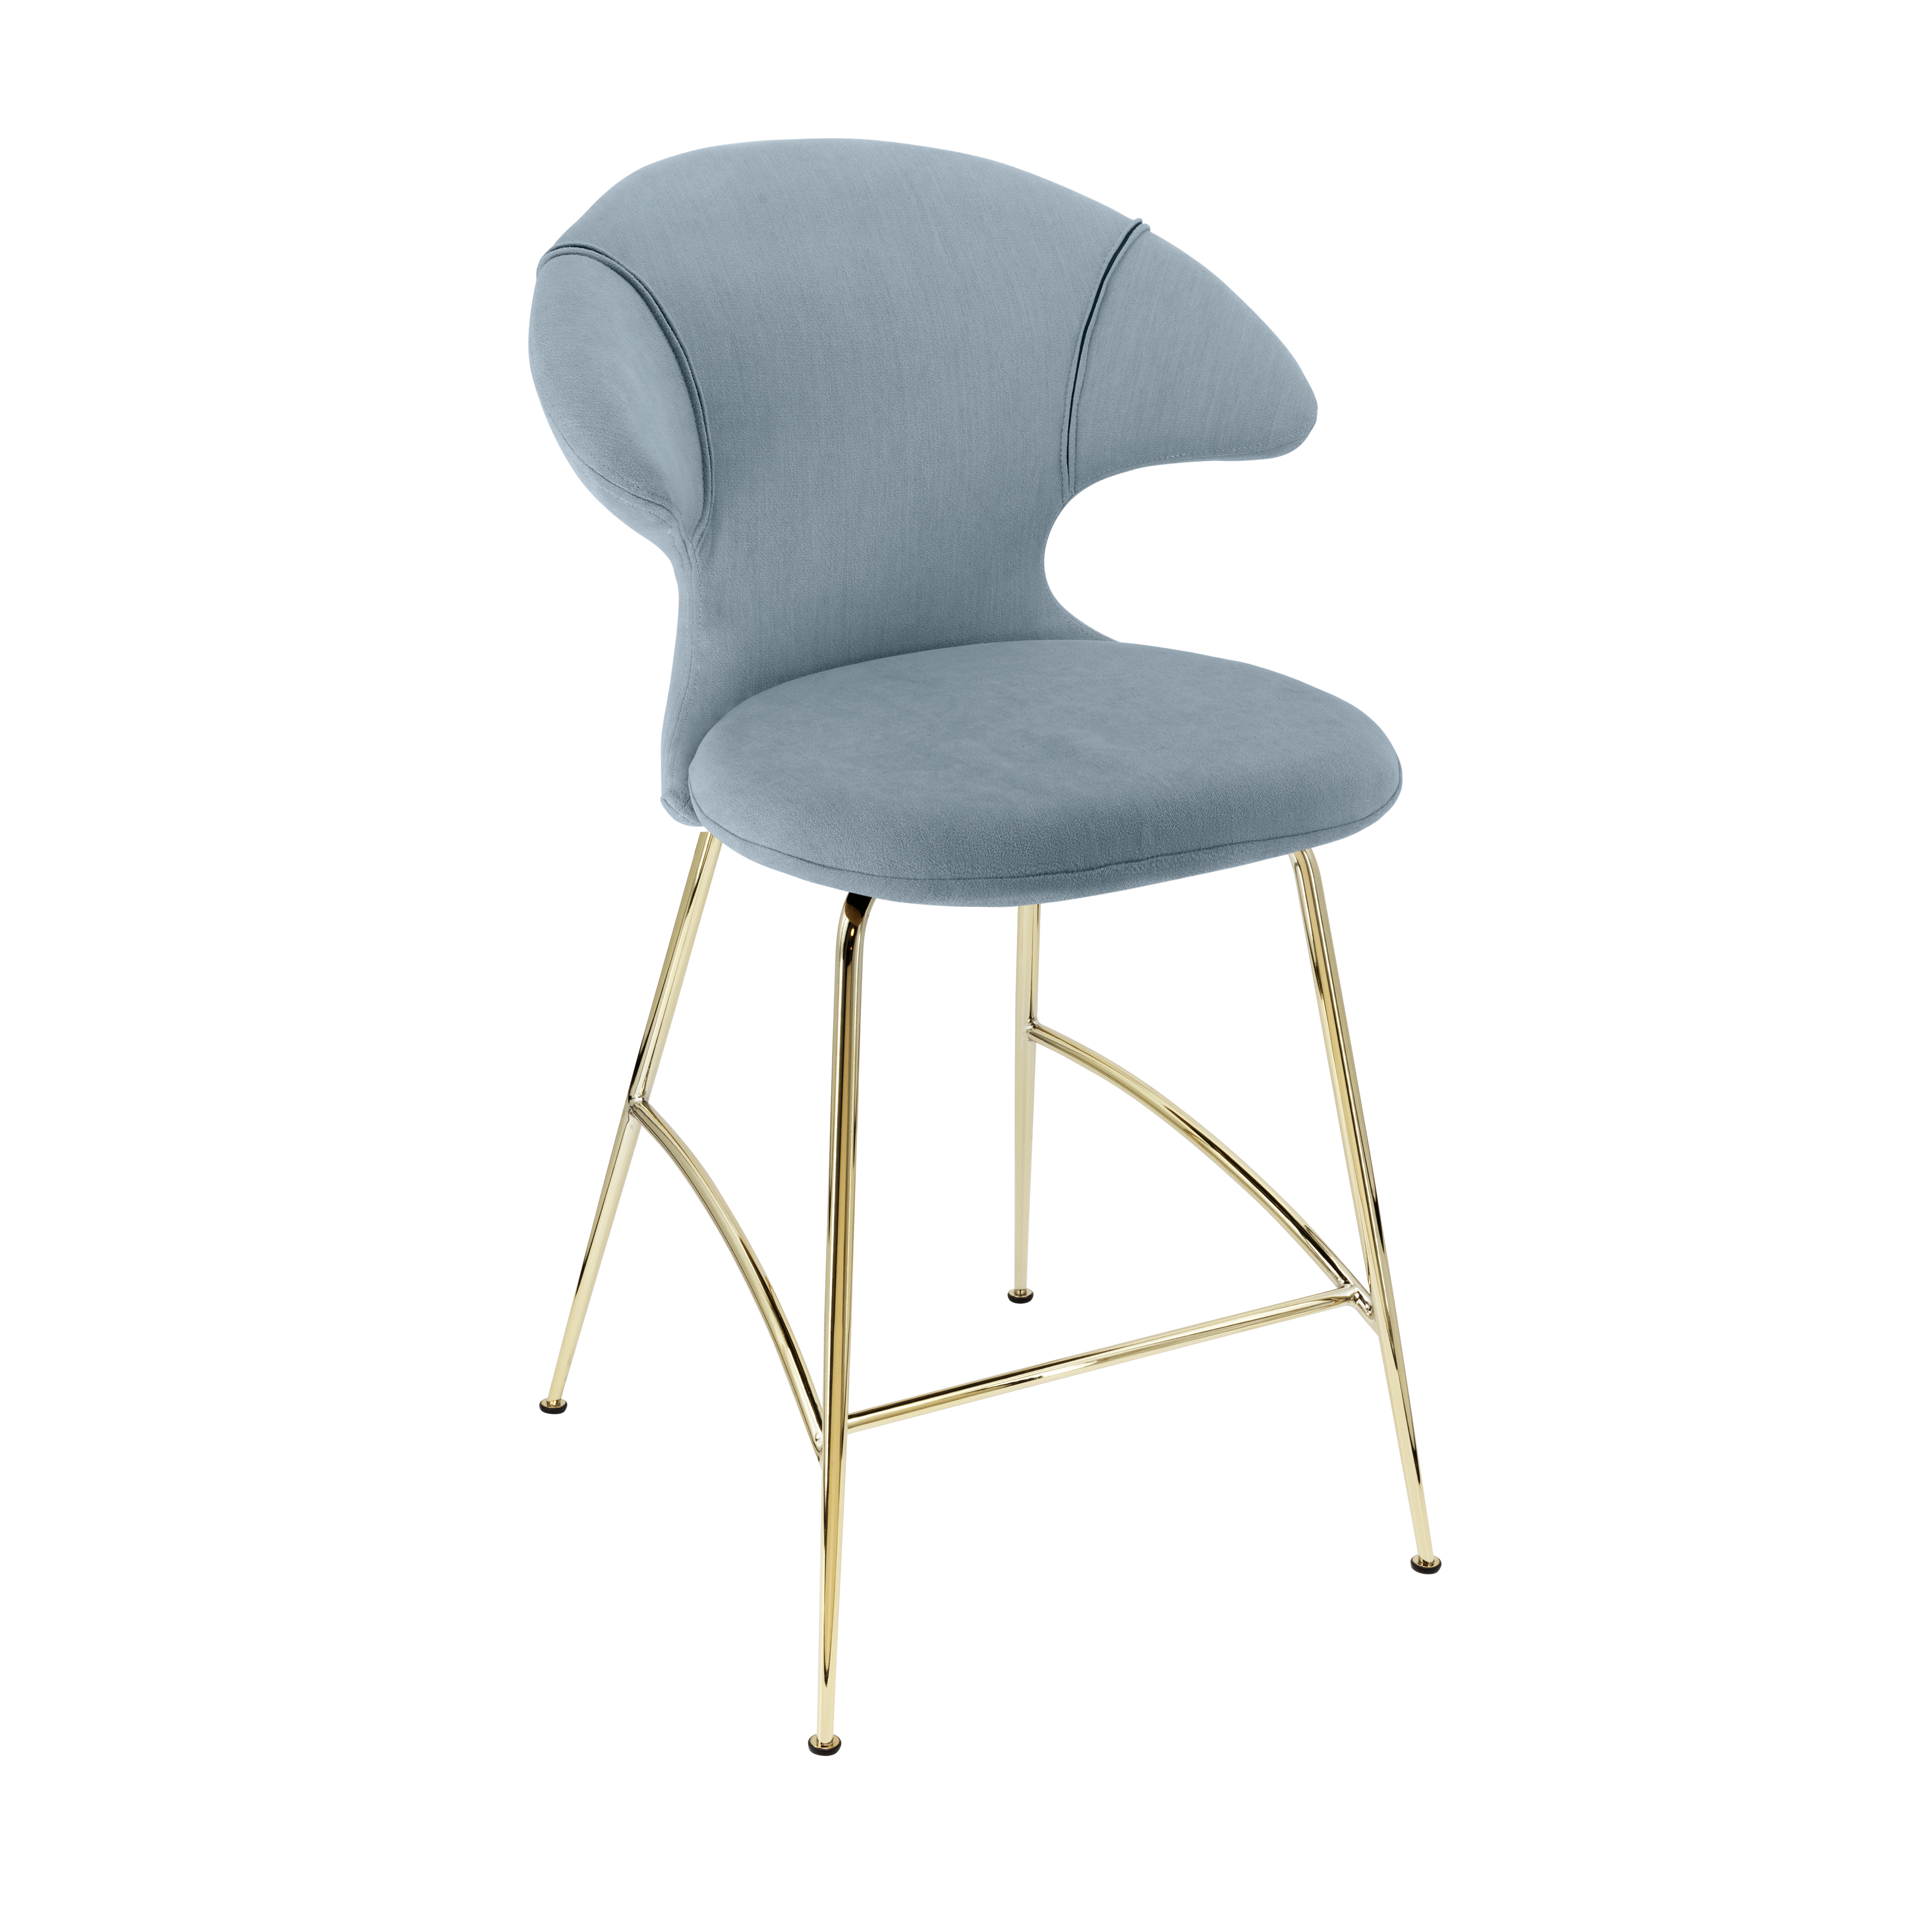 Time Flies Counter Stuhl in Bright Skies präsentiert im Onlineshop von KAQTU Design AG. Barstuhl mit Armlehne ist von Umage